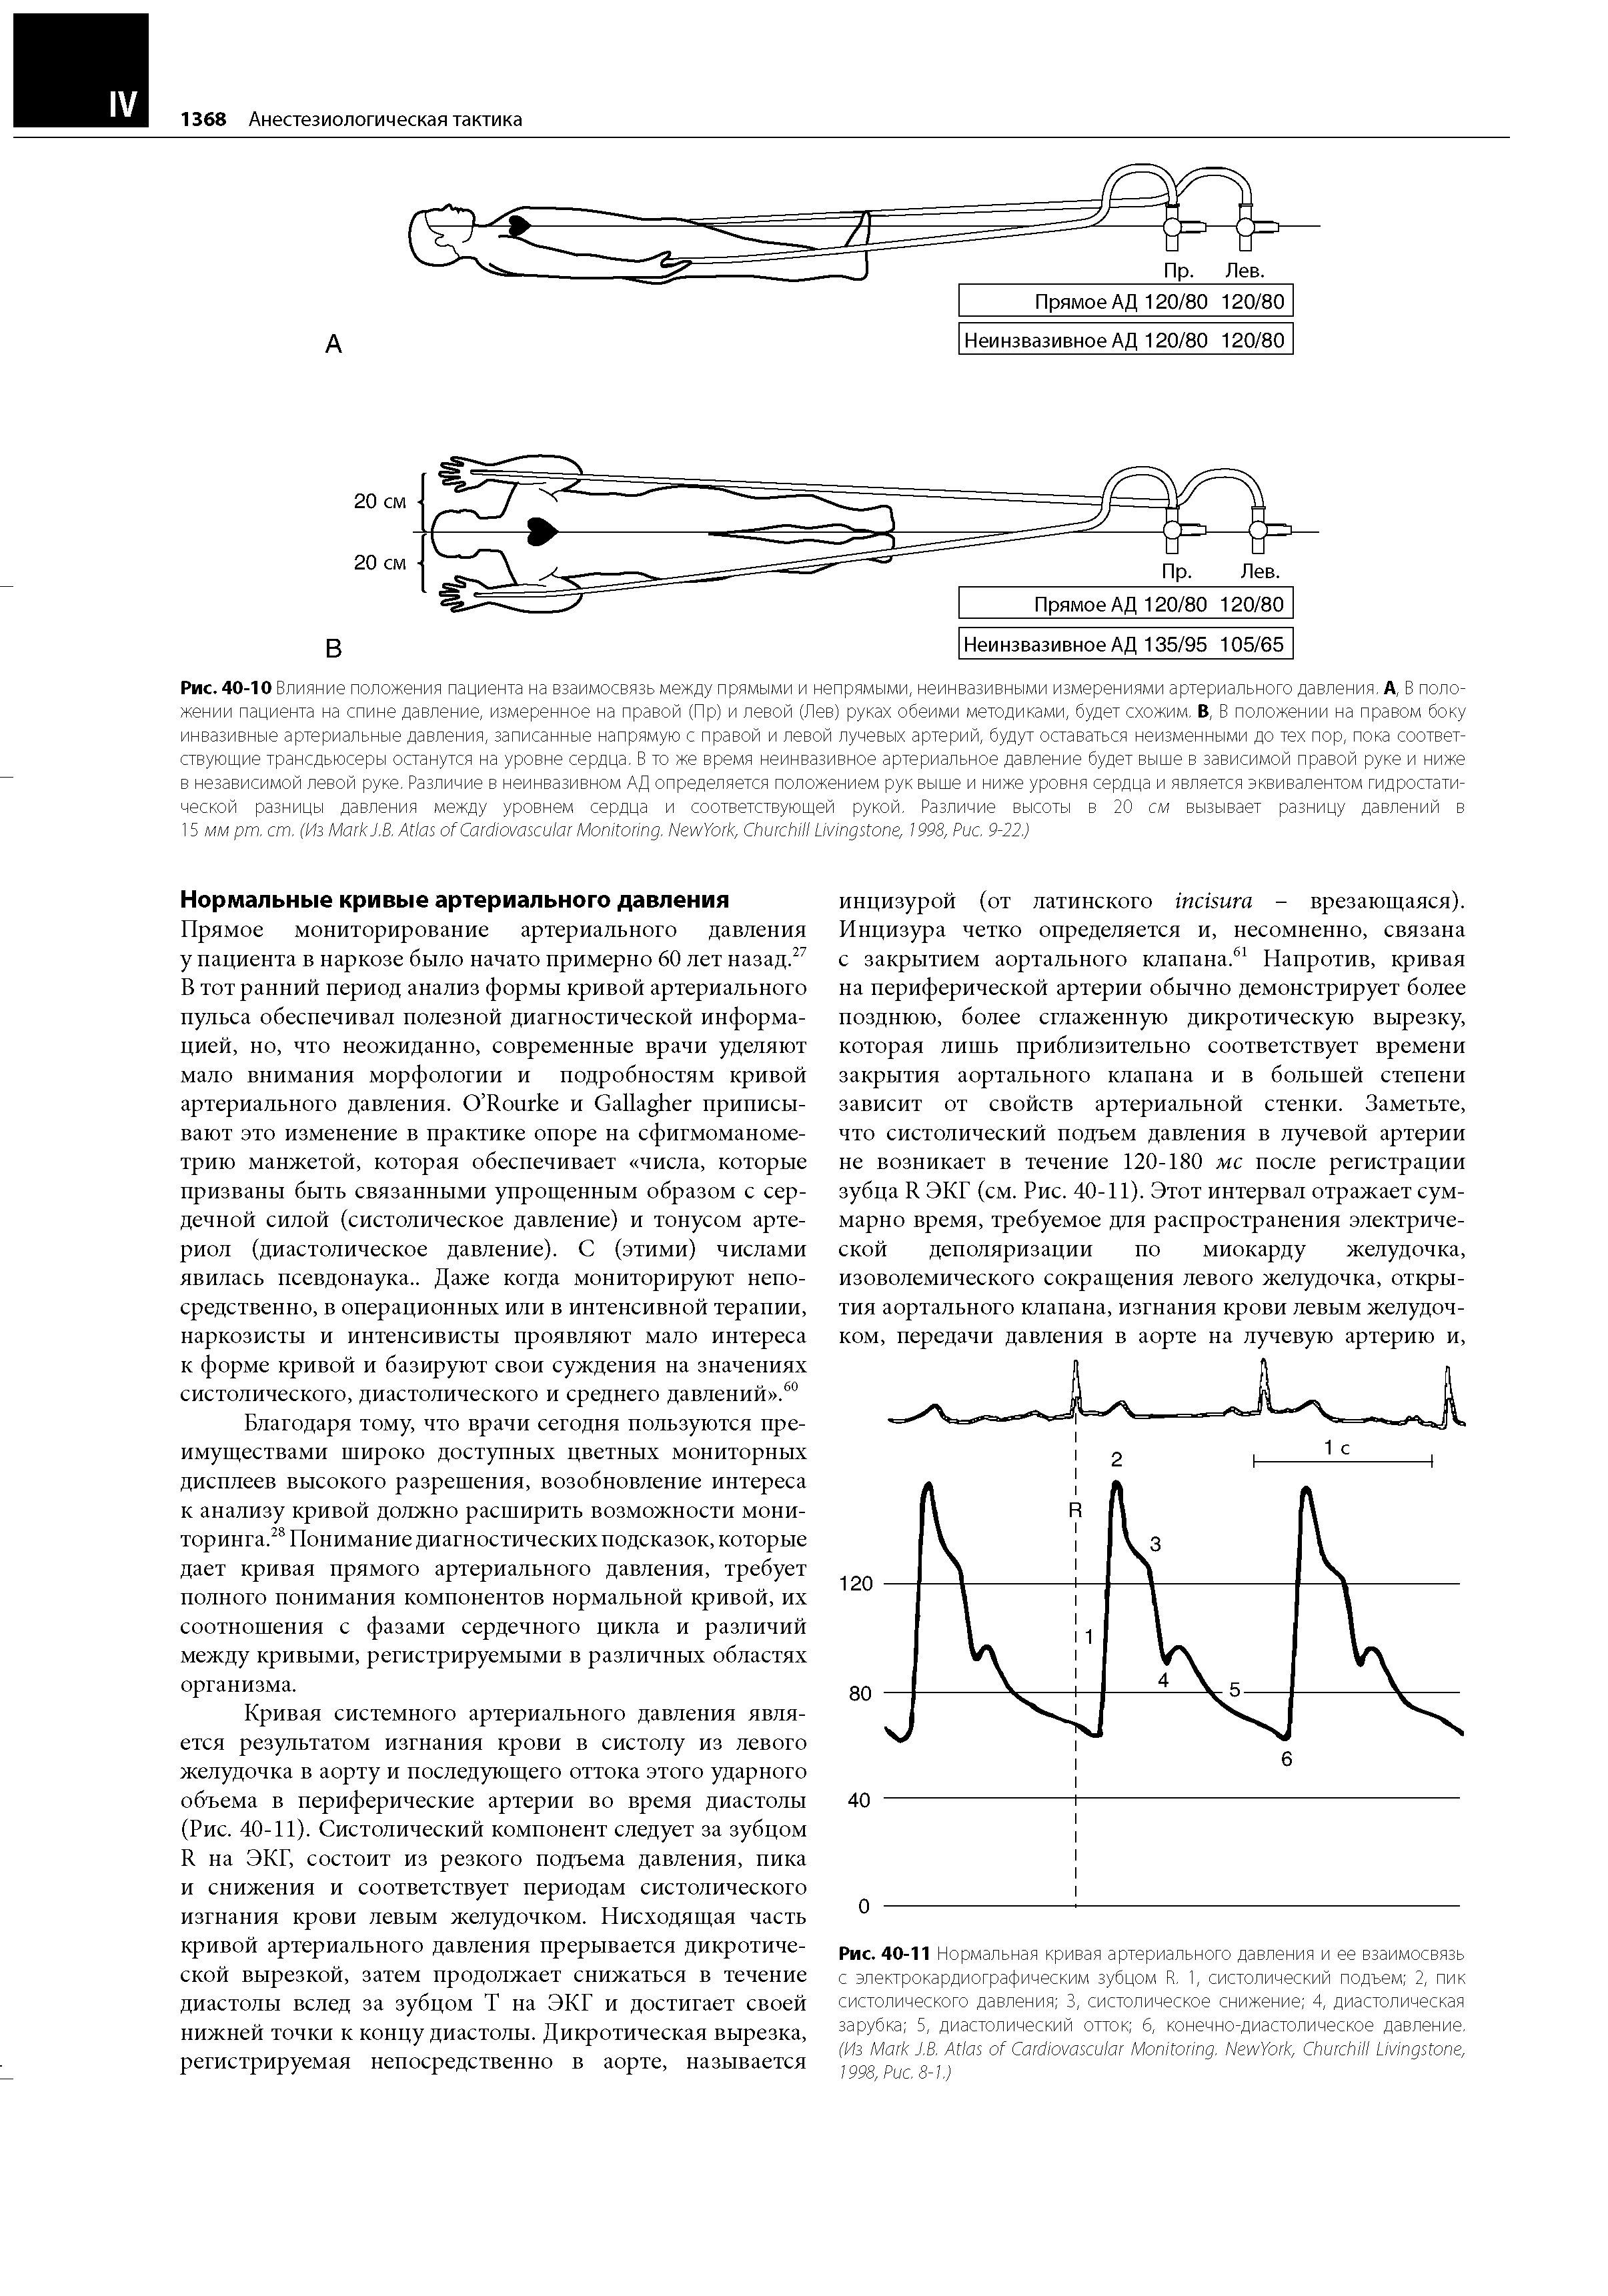 Рис. 40-11 Нормальная кривая артериального давления и ее взаимосвязь с электрокардиографическим зубцом R. 1, систолический подъем 2, пик систолического давления 3, систолическое снижение 4, диастолическая зарубка 5, диастолический отток 6, конечно-диастолическое давление. (Из M J.B. A C M . N Y , C L , 1998, P . 8-1.)...